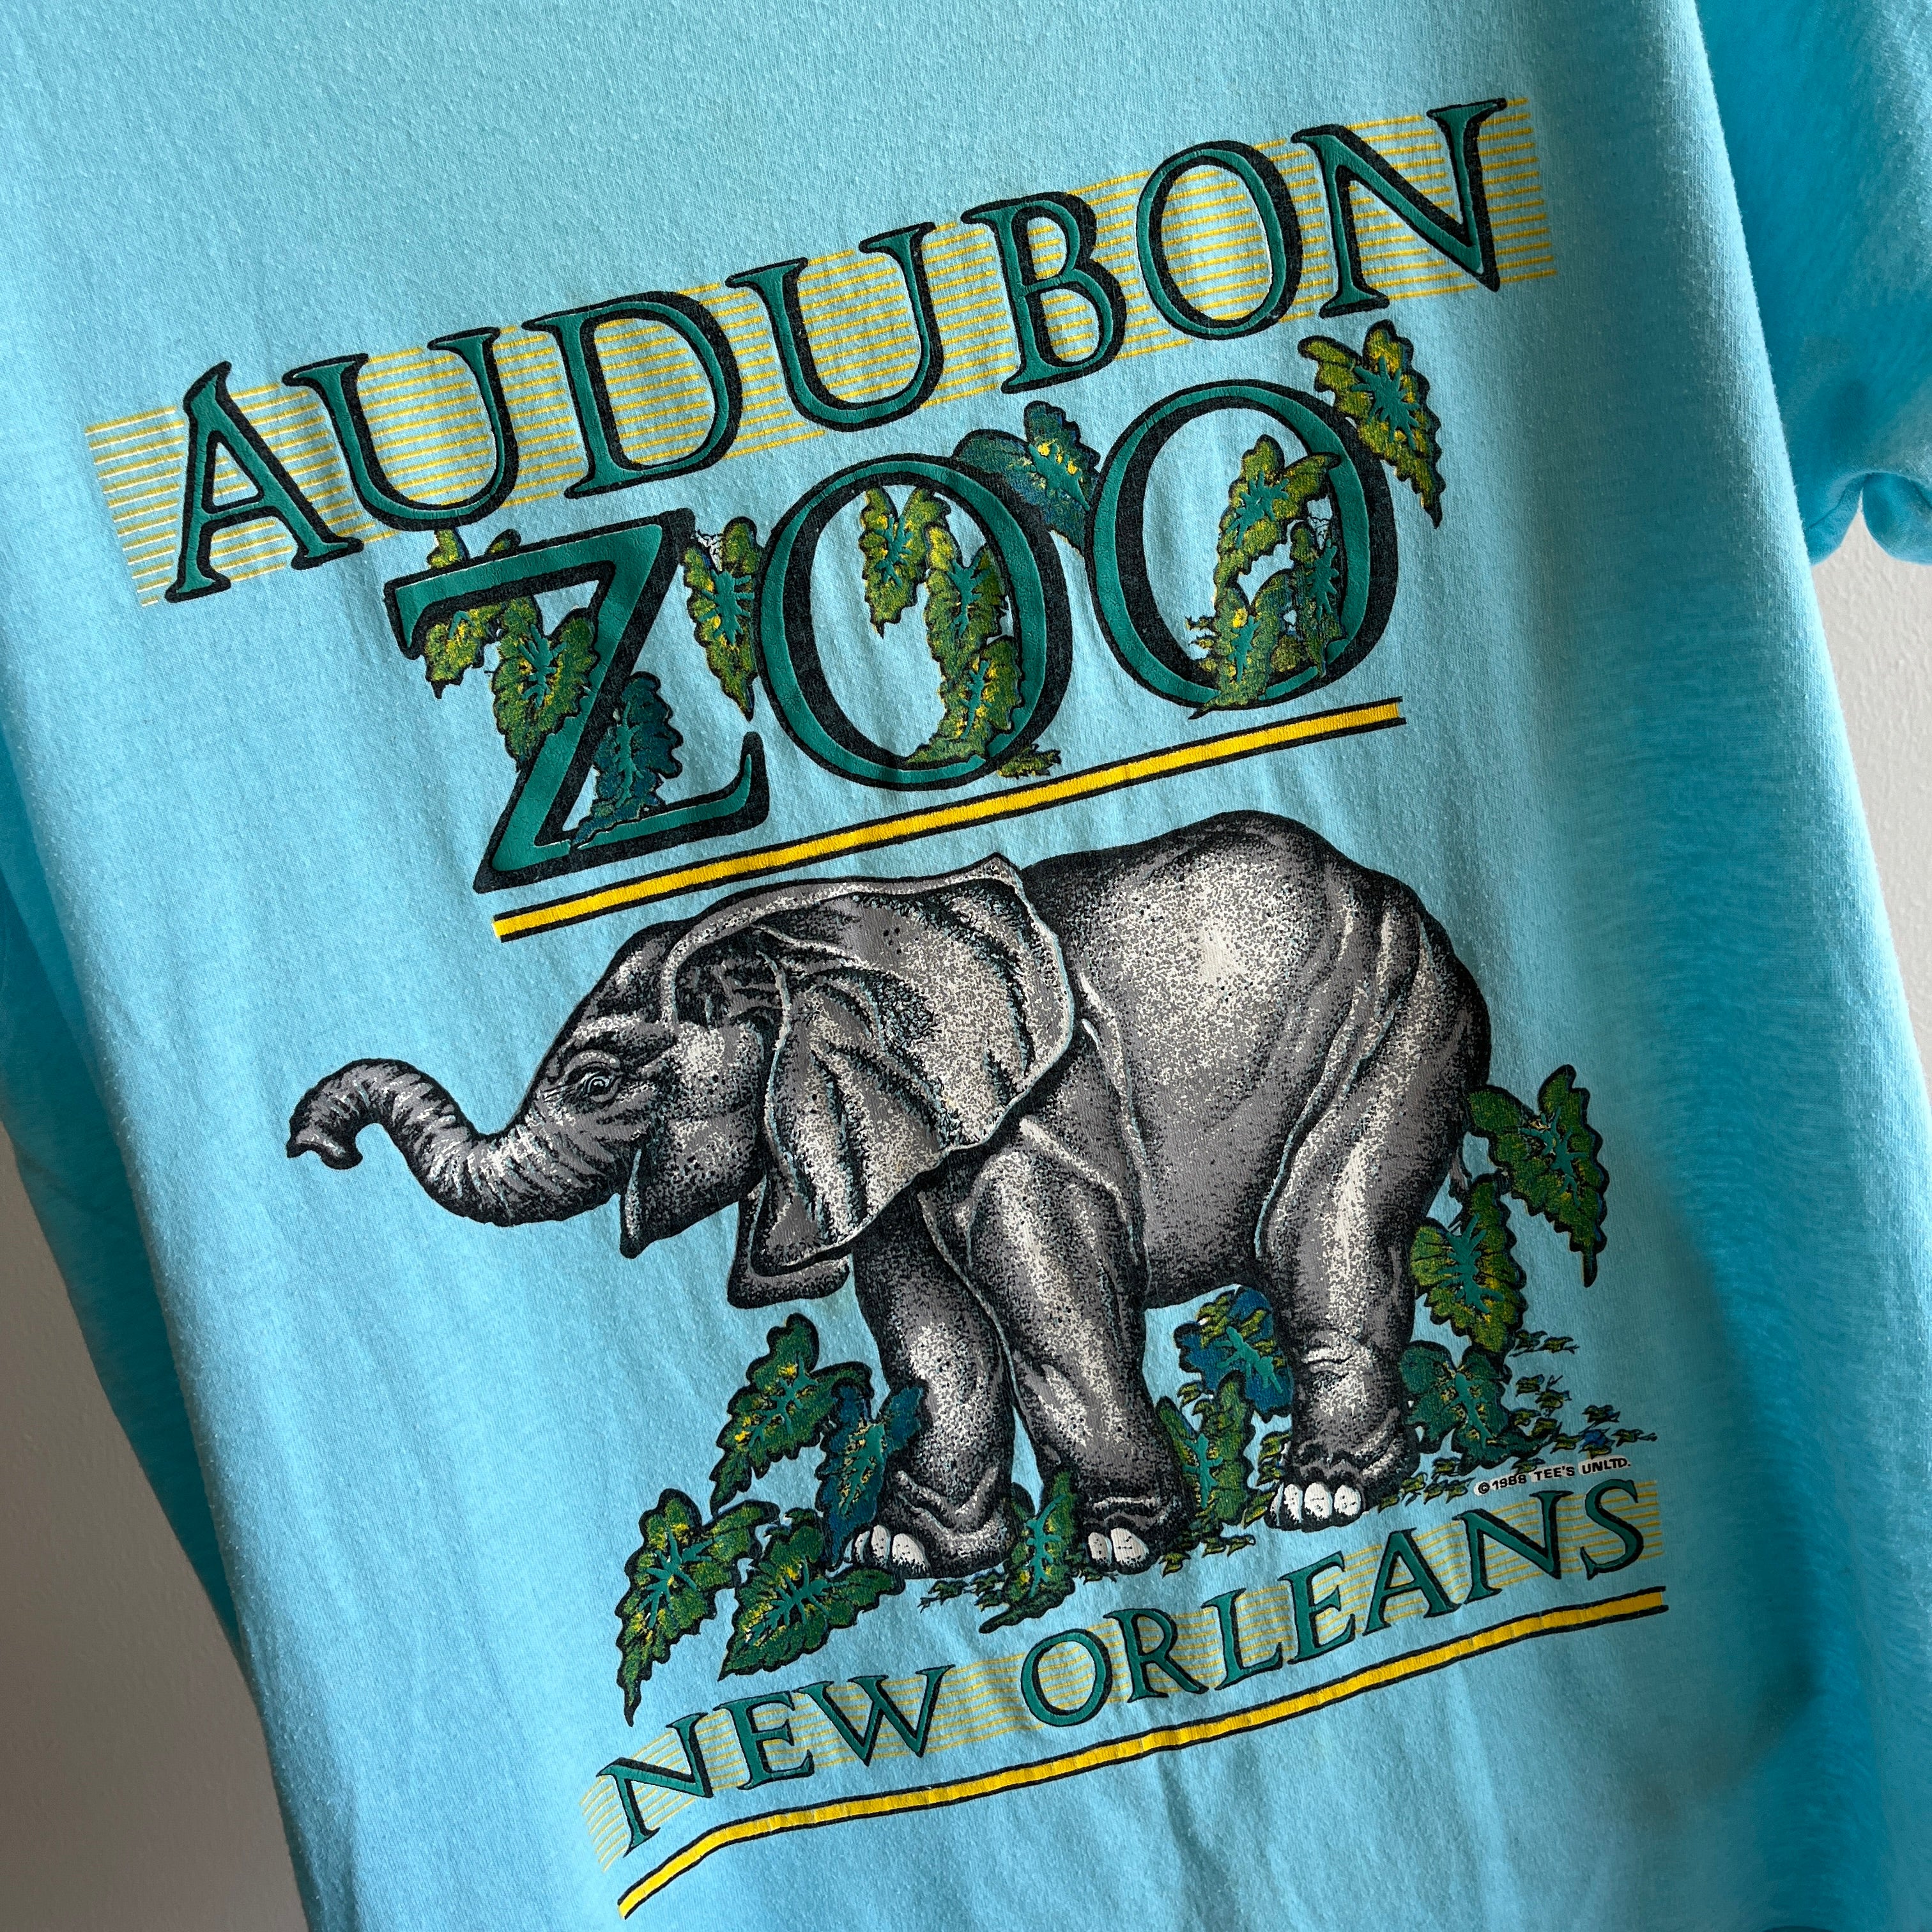 1988 Audubon Zoo New Orleans T-shirt graphique par Screen Stars